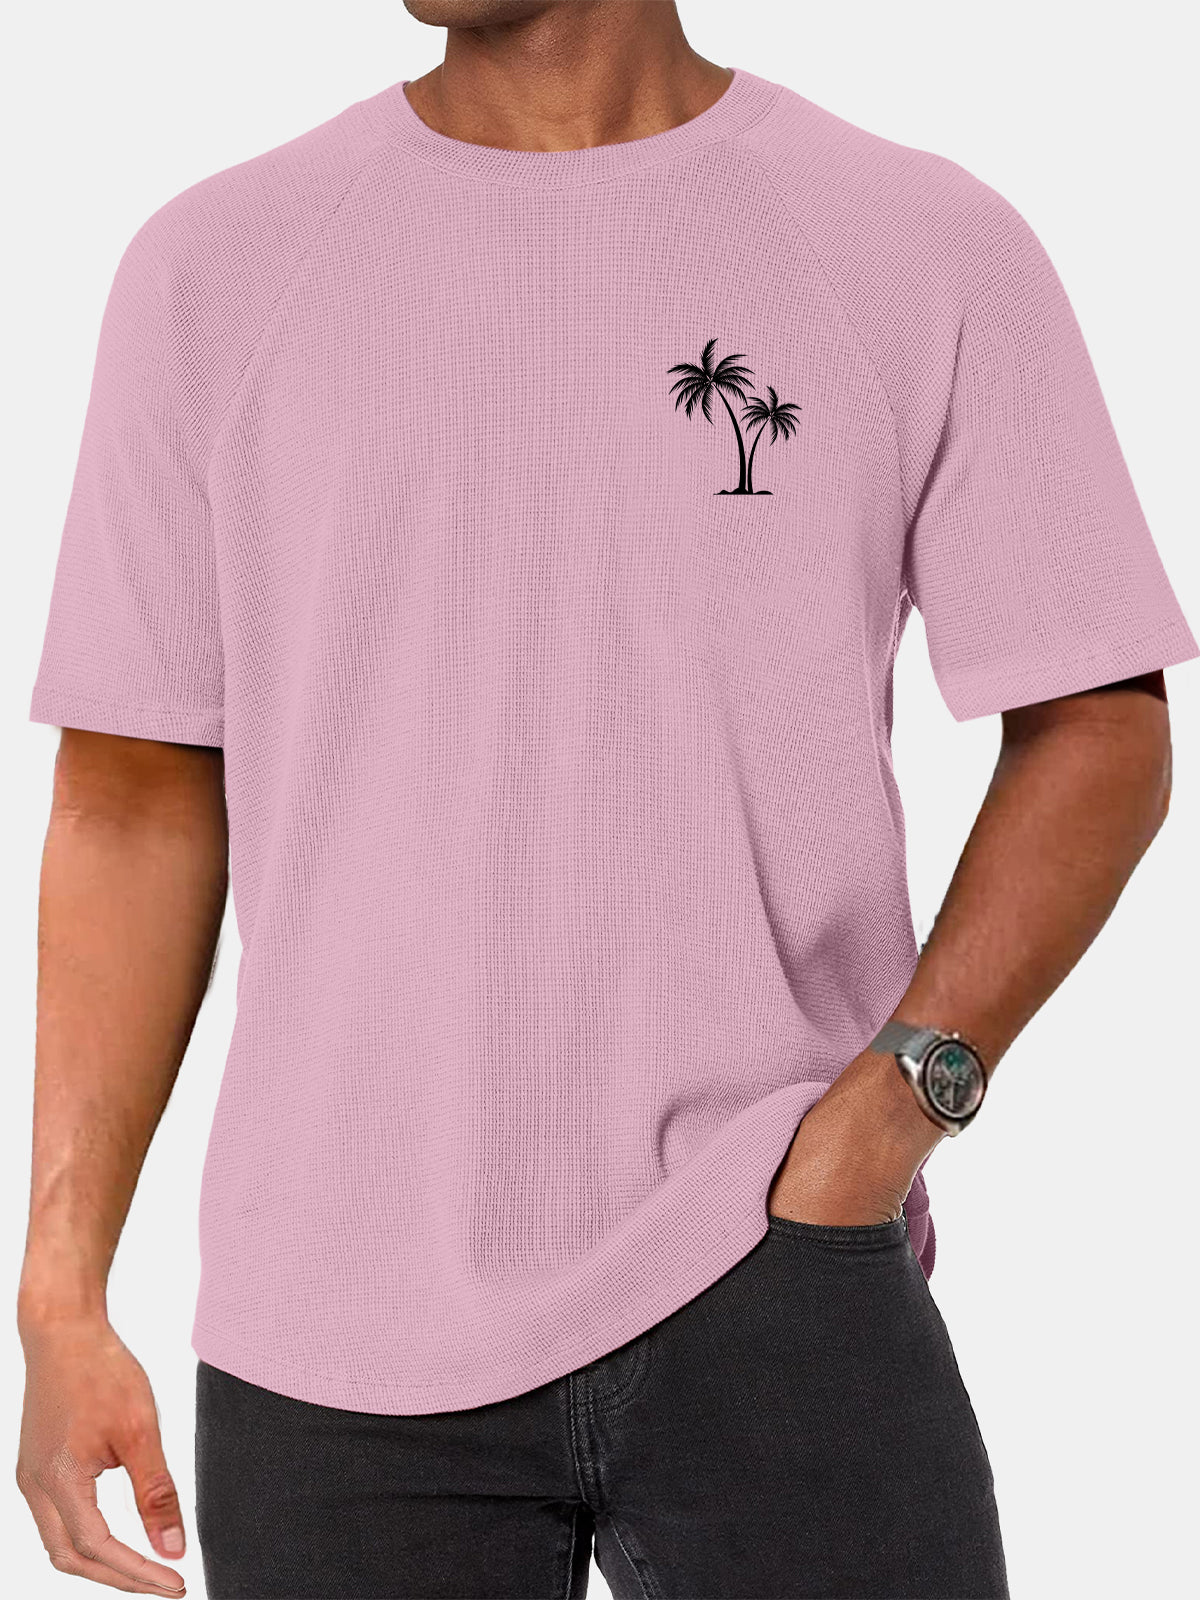 Men's Simple Hawaiian Coconut Print Waffle Raglan Short Sleeve T-shirt